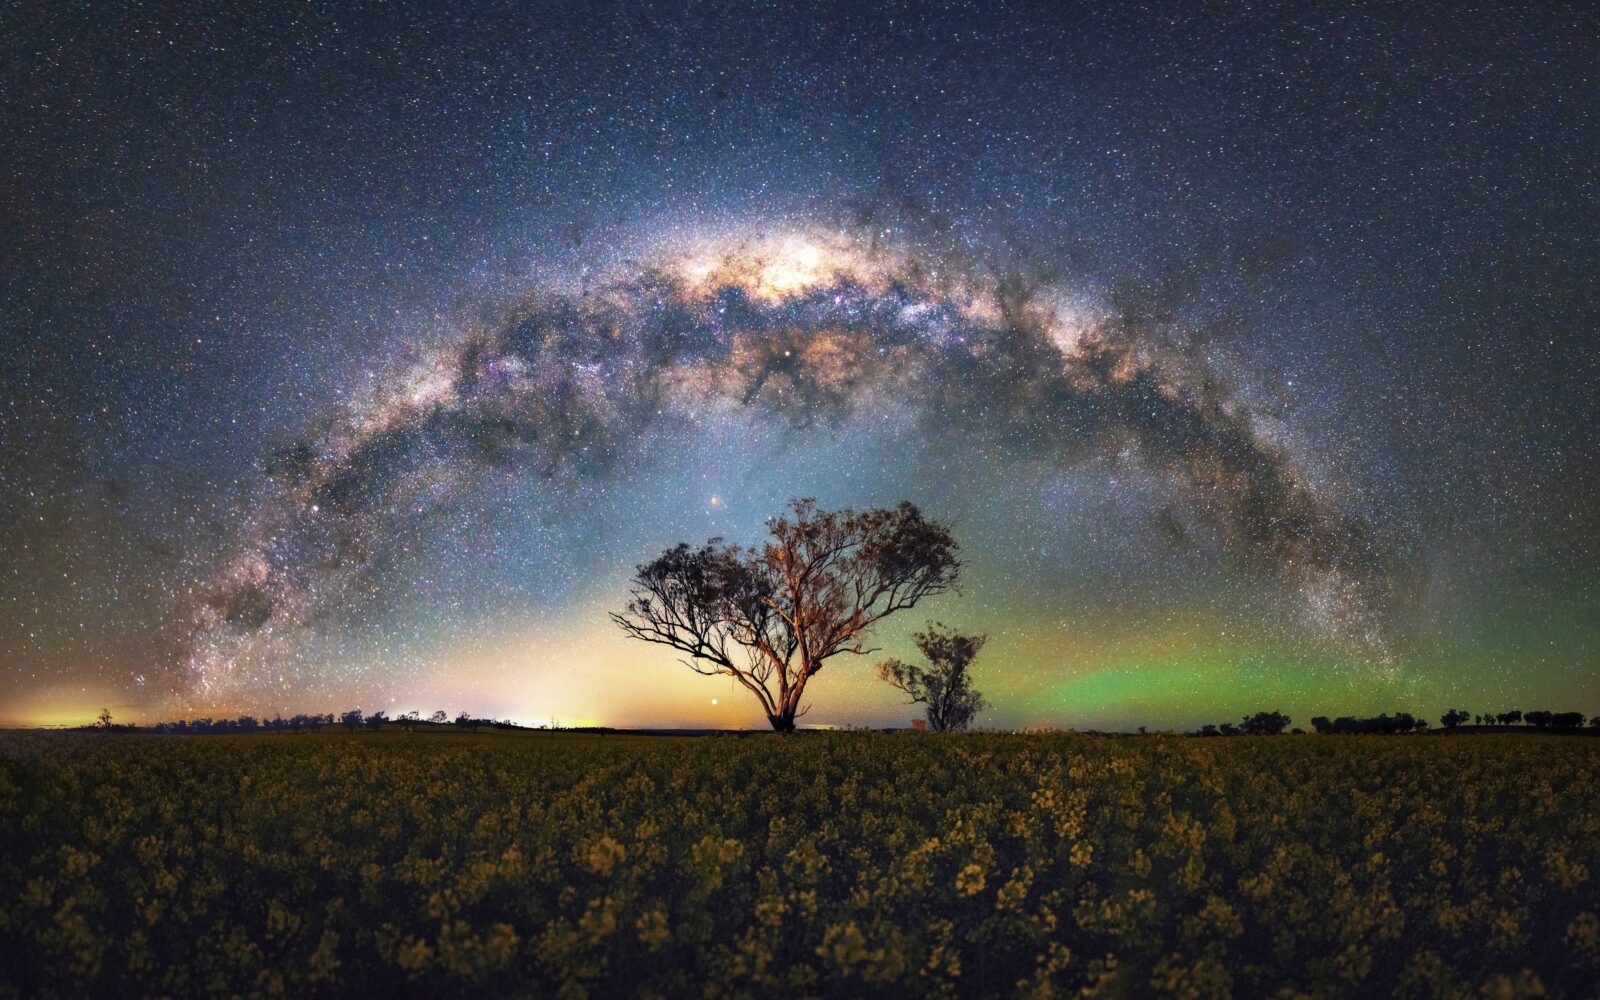 Hervey Bay Milky Way Masterclass - how to photograph the Milky Way